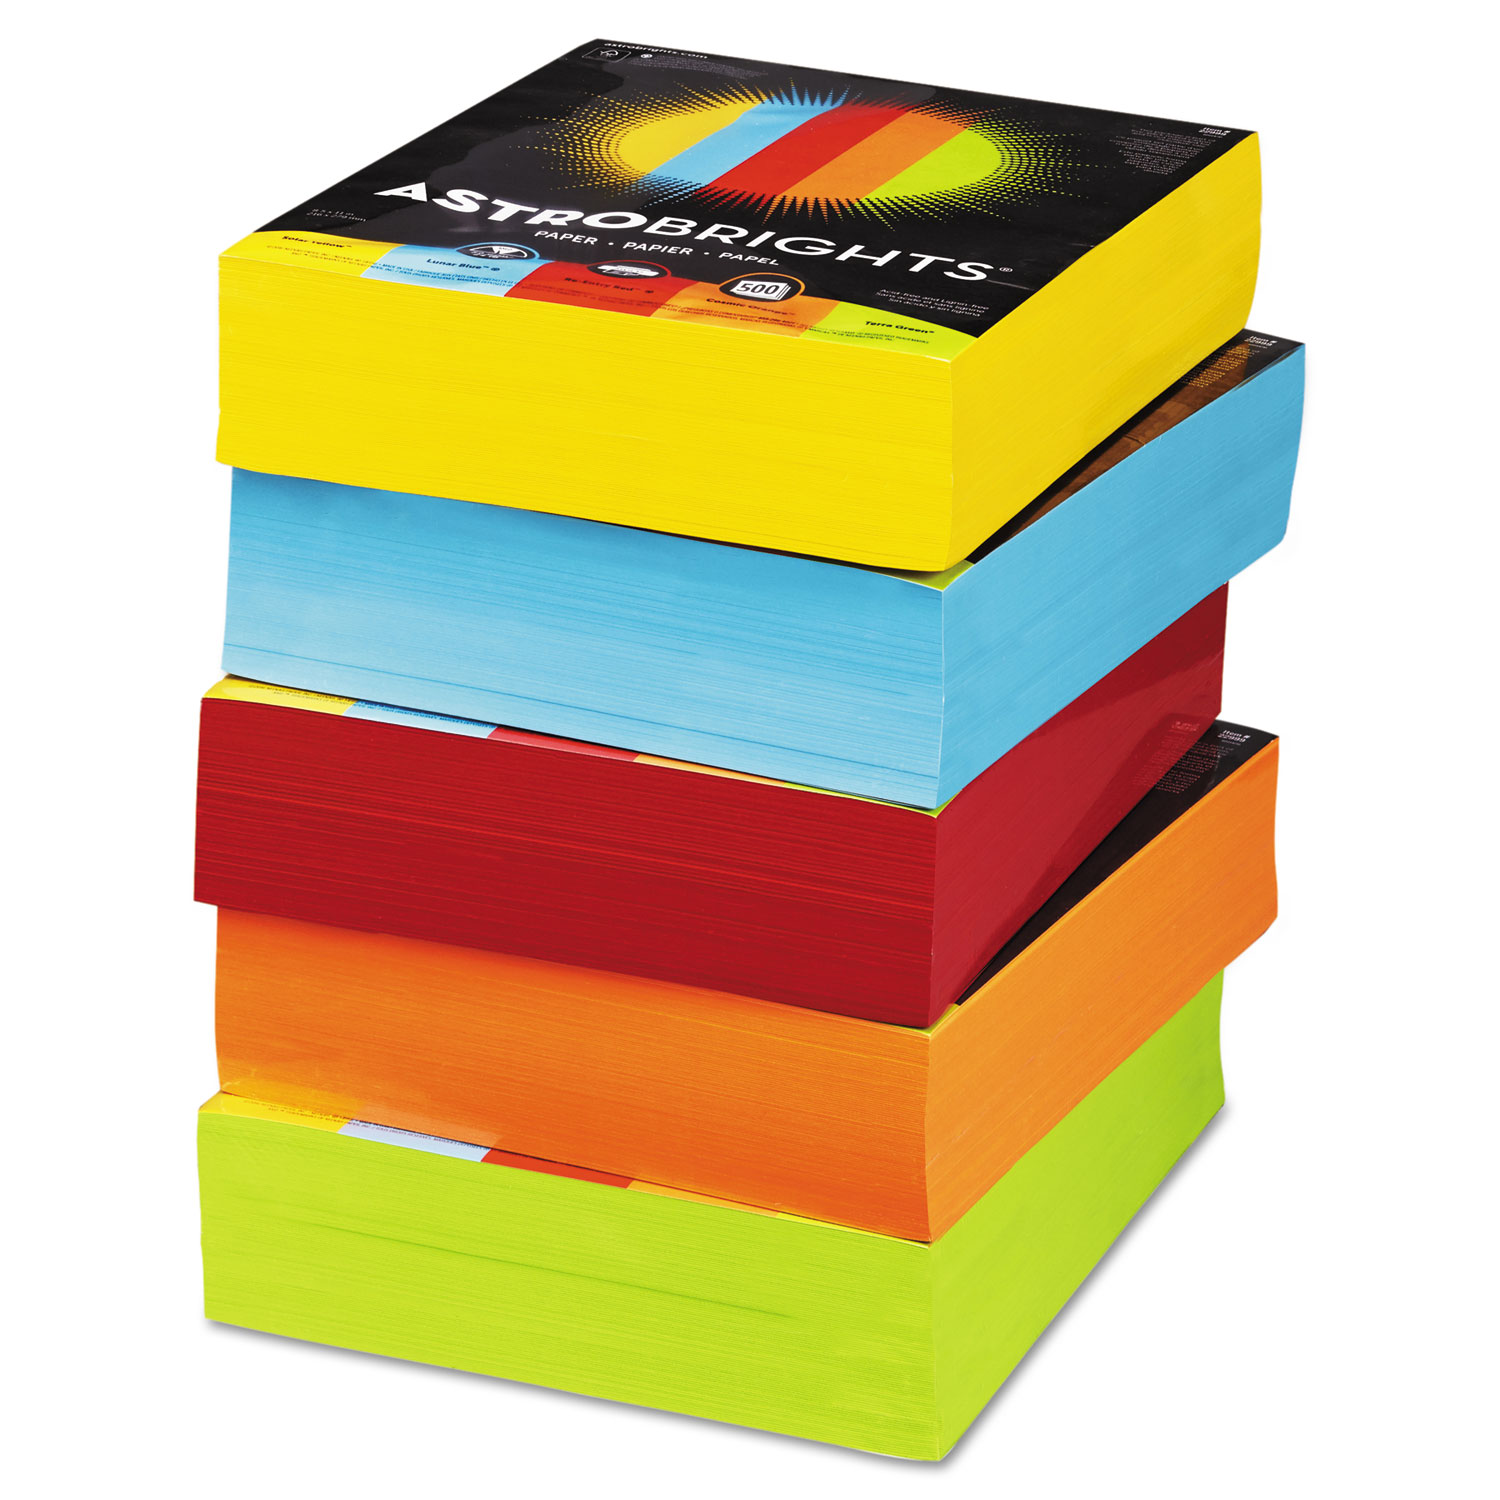  Astrobrights 22999 Color Paper - Five-Color Mixed Carton, 24lb, 8.5 x 11, Assorted, 500 Sheets/Ream, 5 Reams/Carton (WAU22999) 